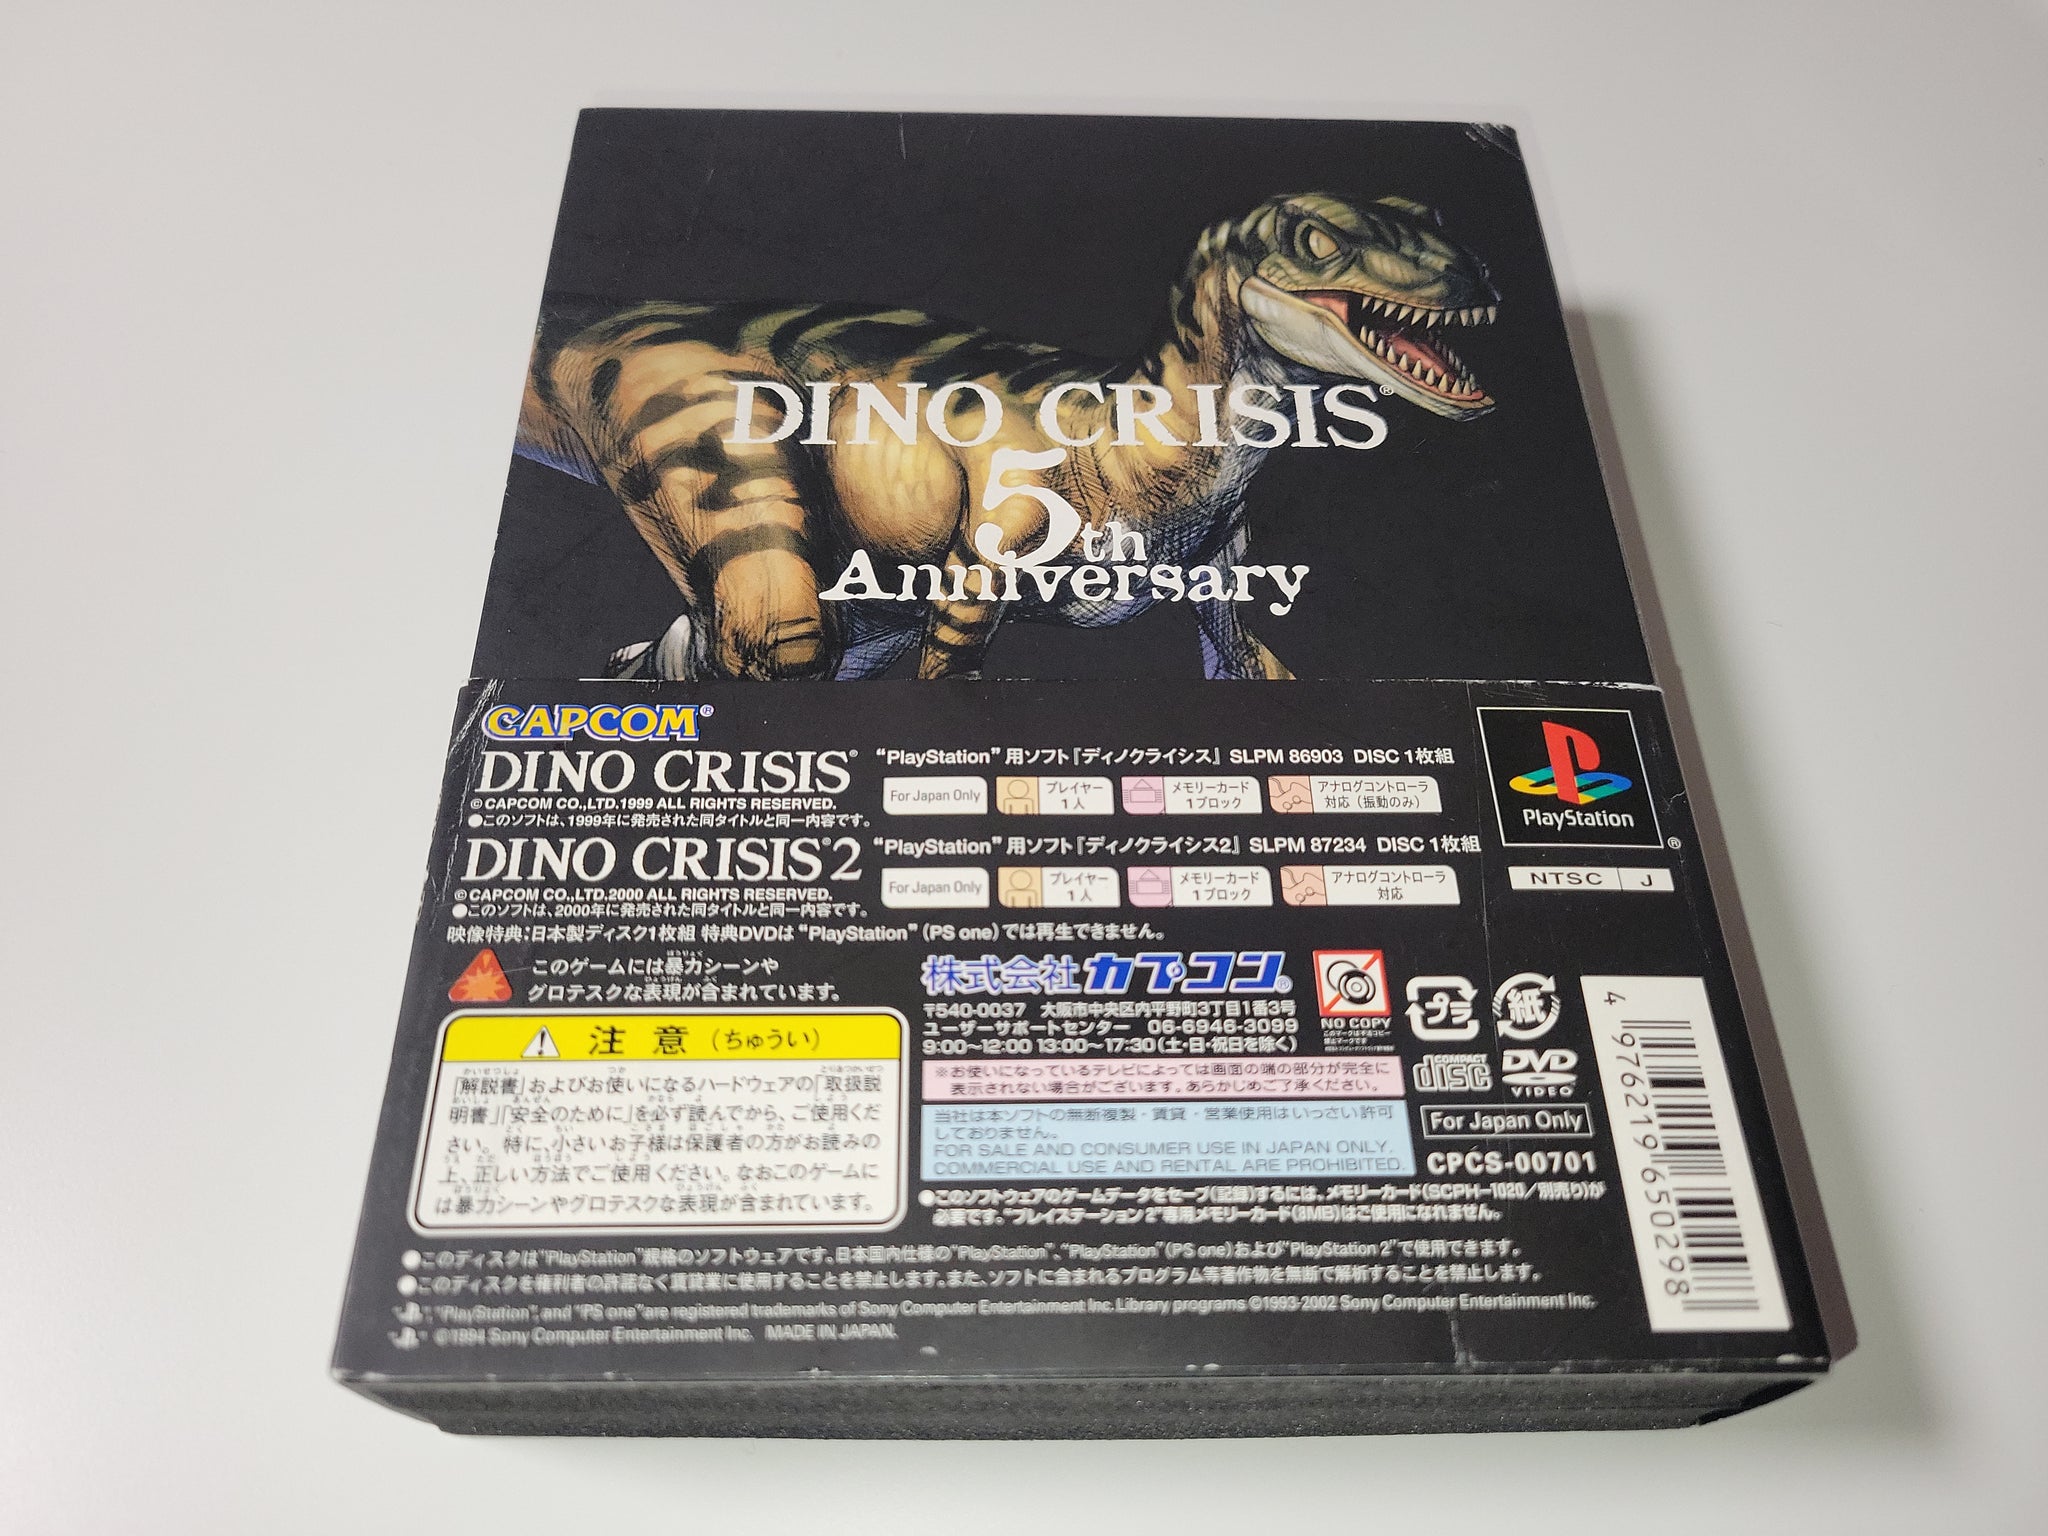 ディノクライシス 5th Anniversary - Nintendo Switch